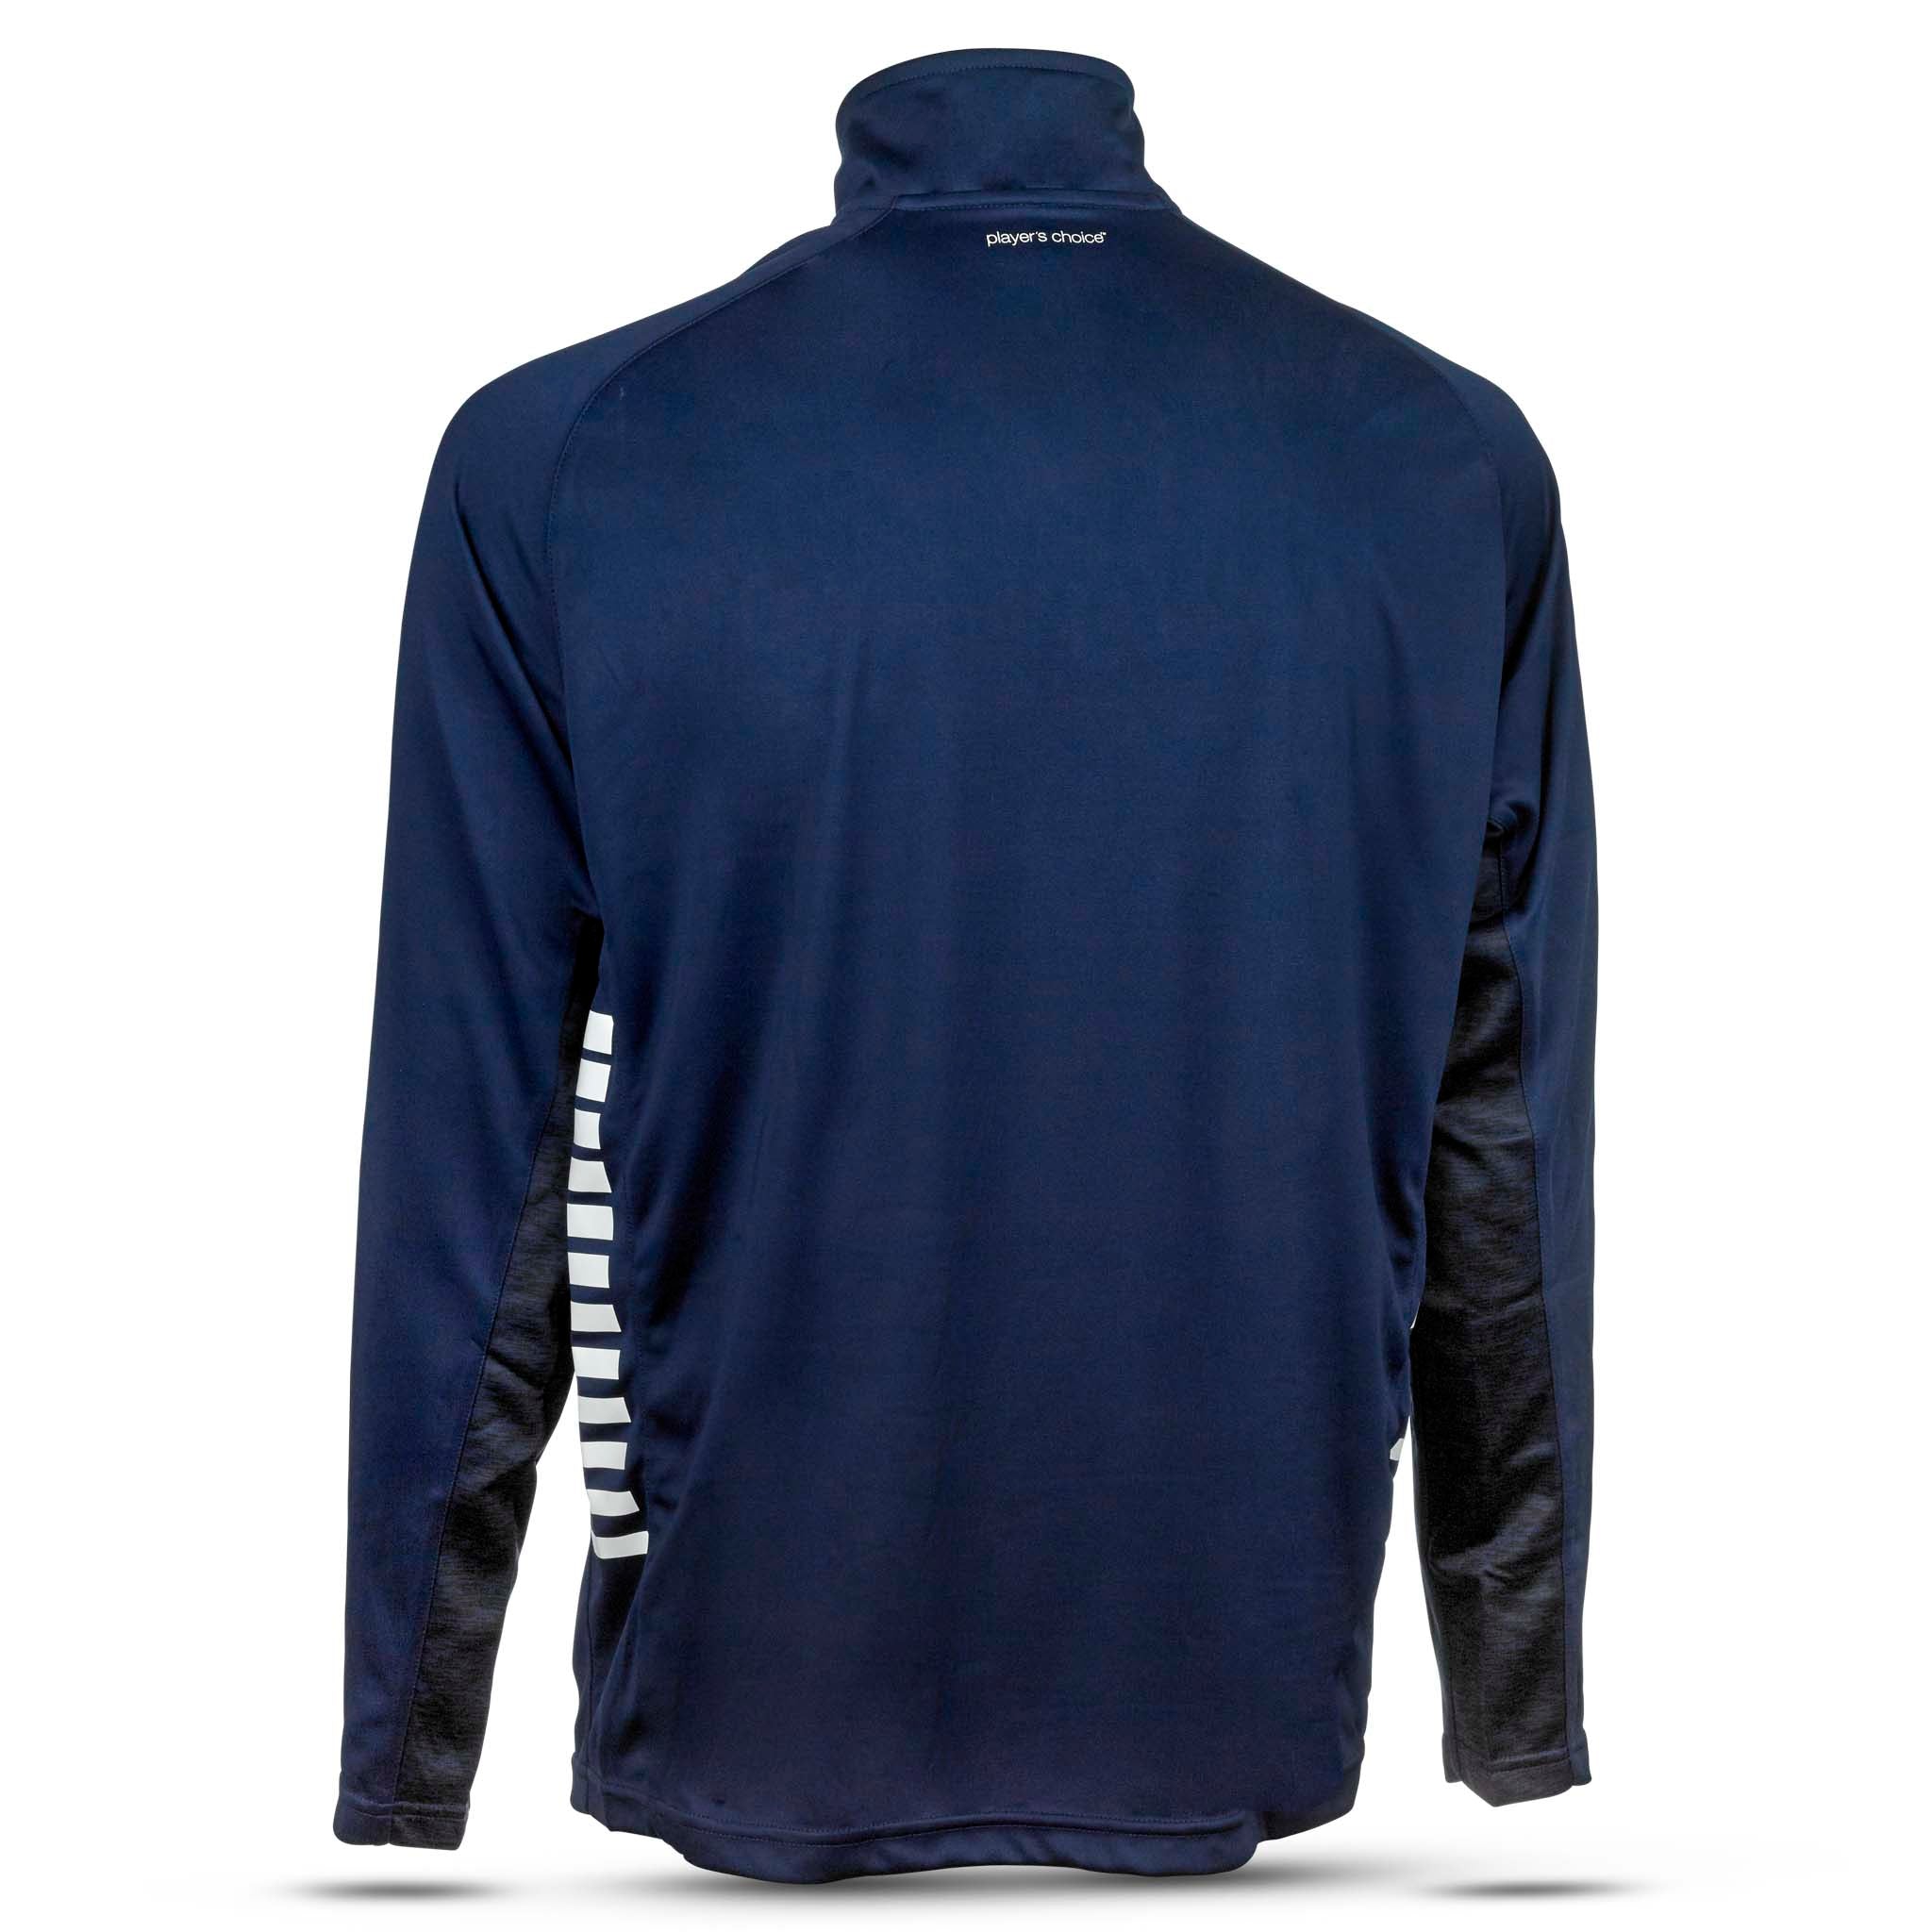 Spain Träning sweatshirt 1/2 zip - Barn #färg_navy